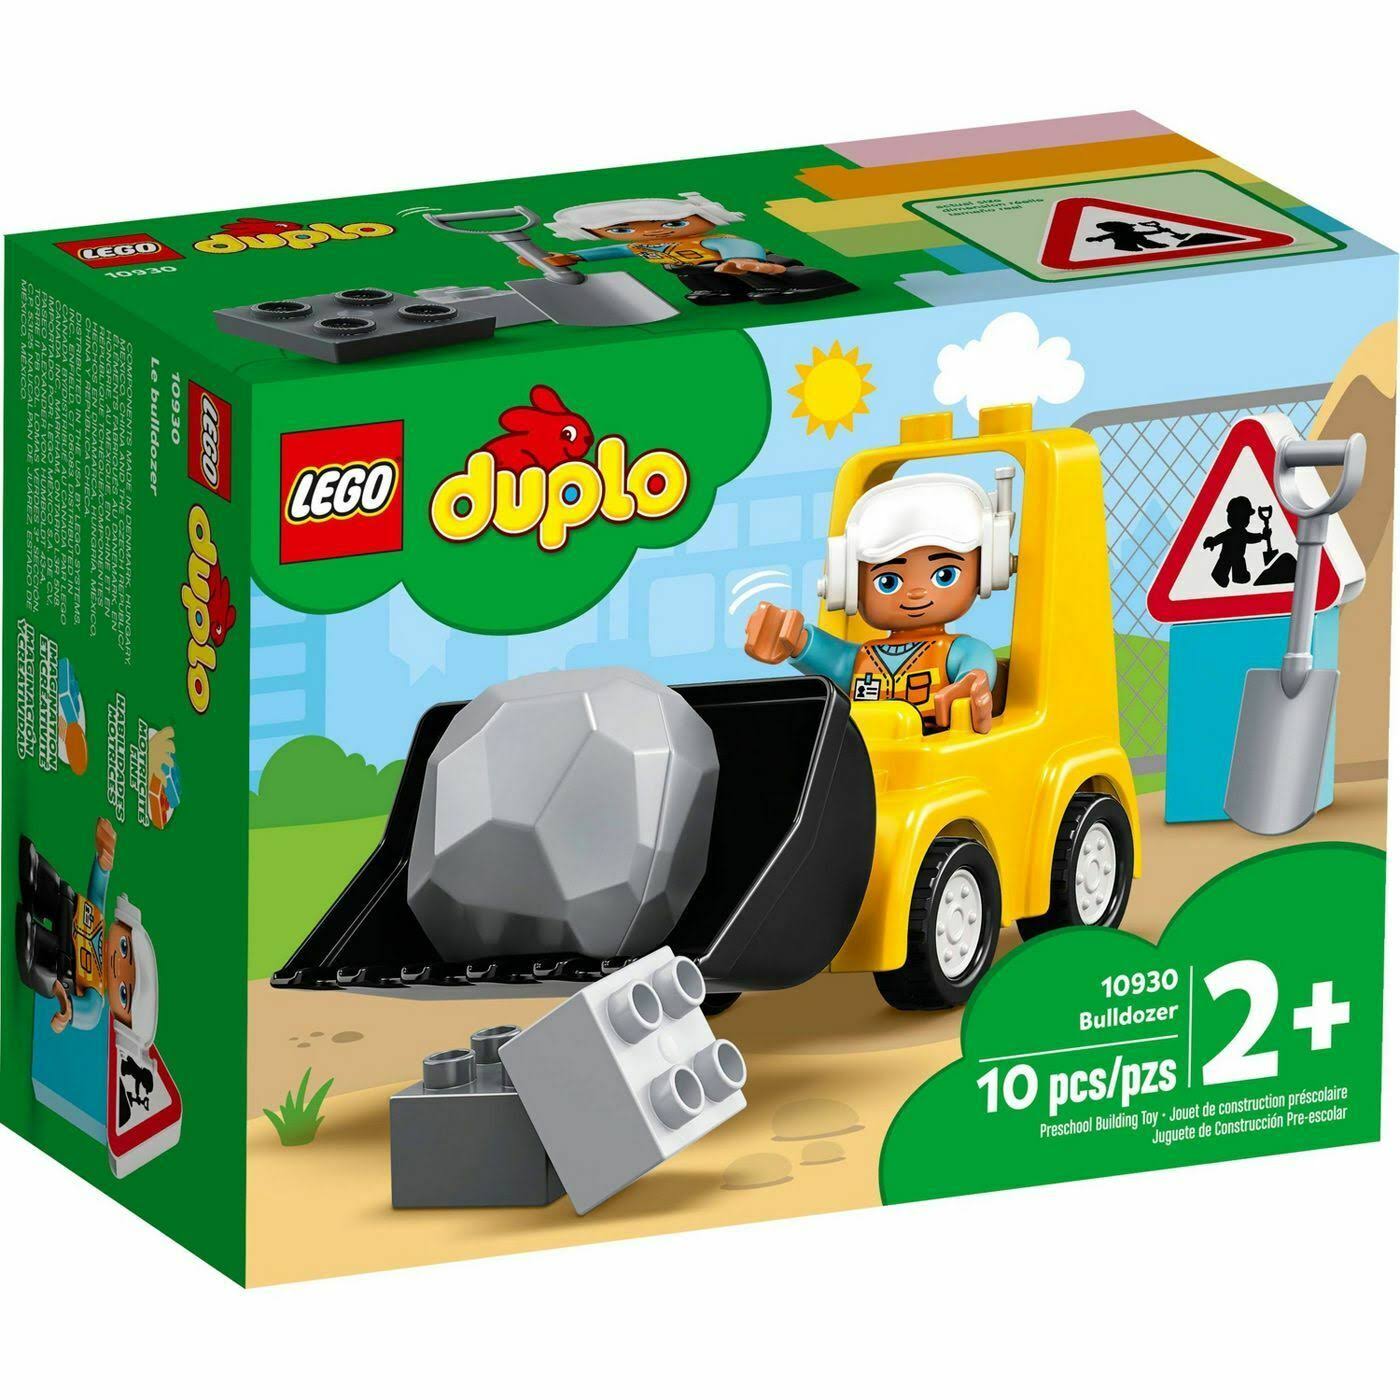 Lego 10930 DUPLO Construction Bulldozer Truck Set New with Sealed Box